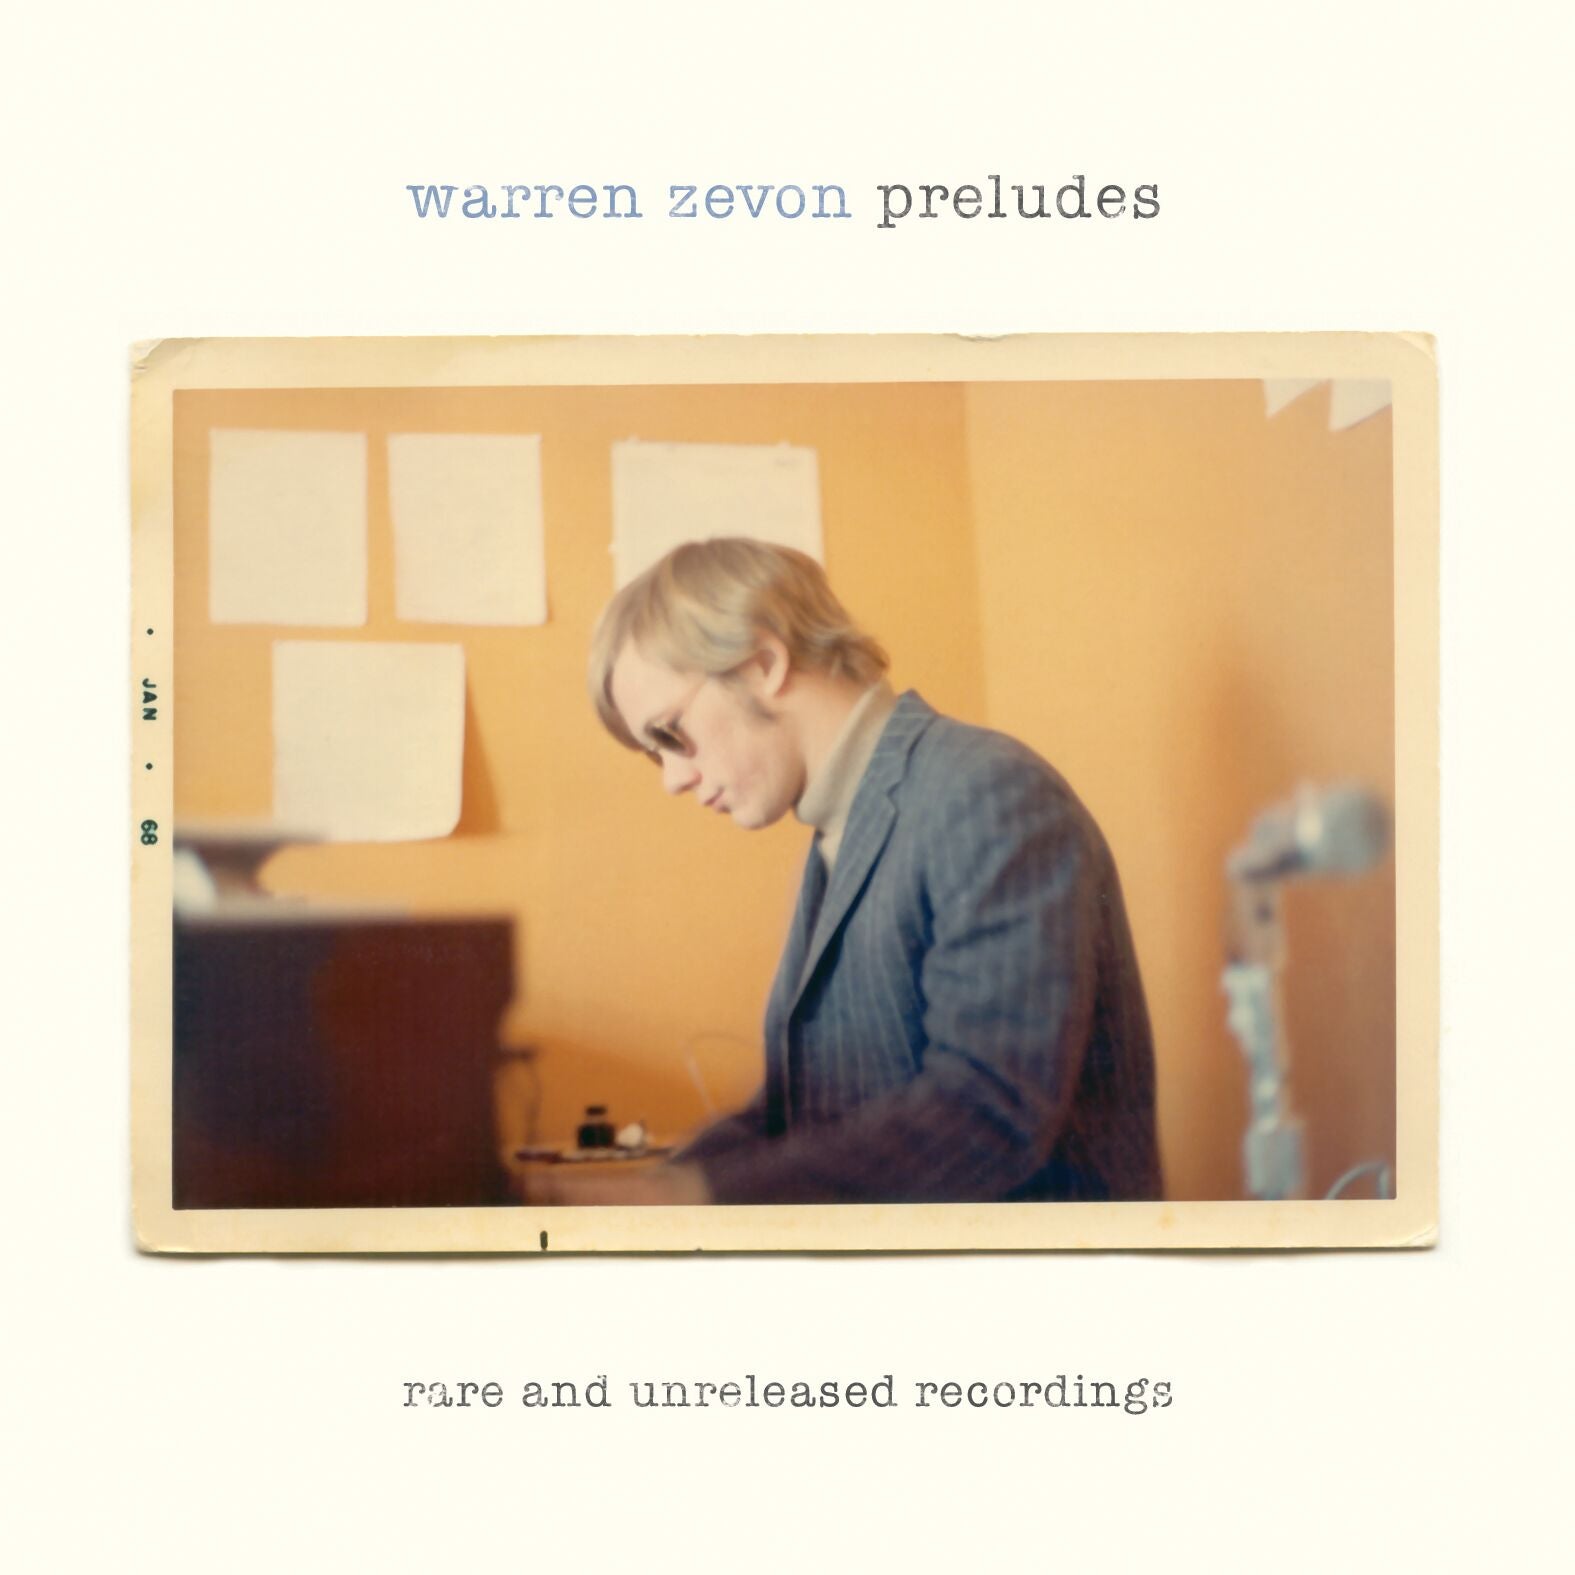 Warren Zevon - Preludes [CD]